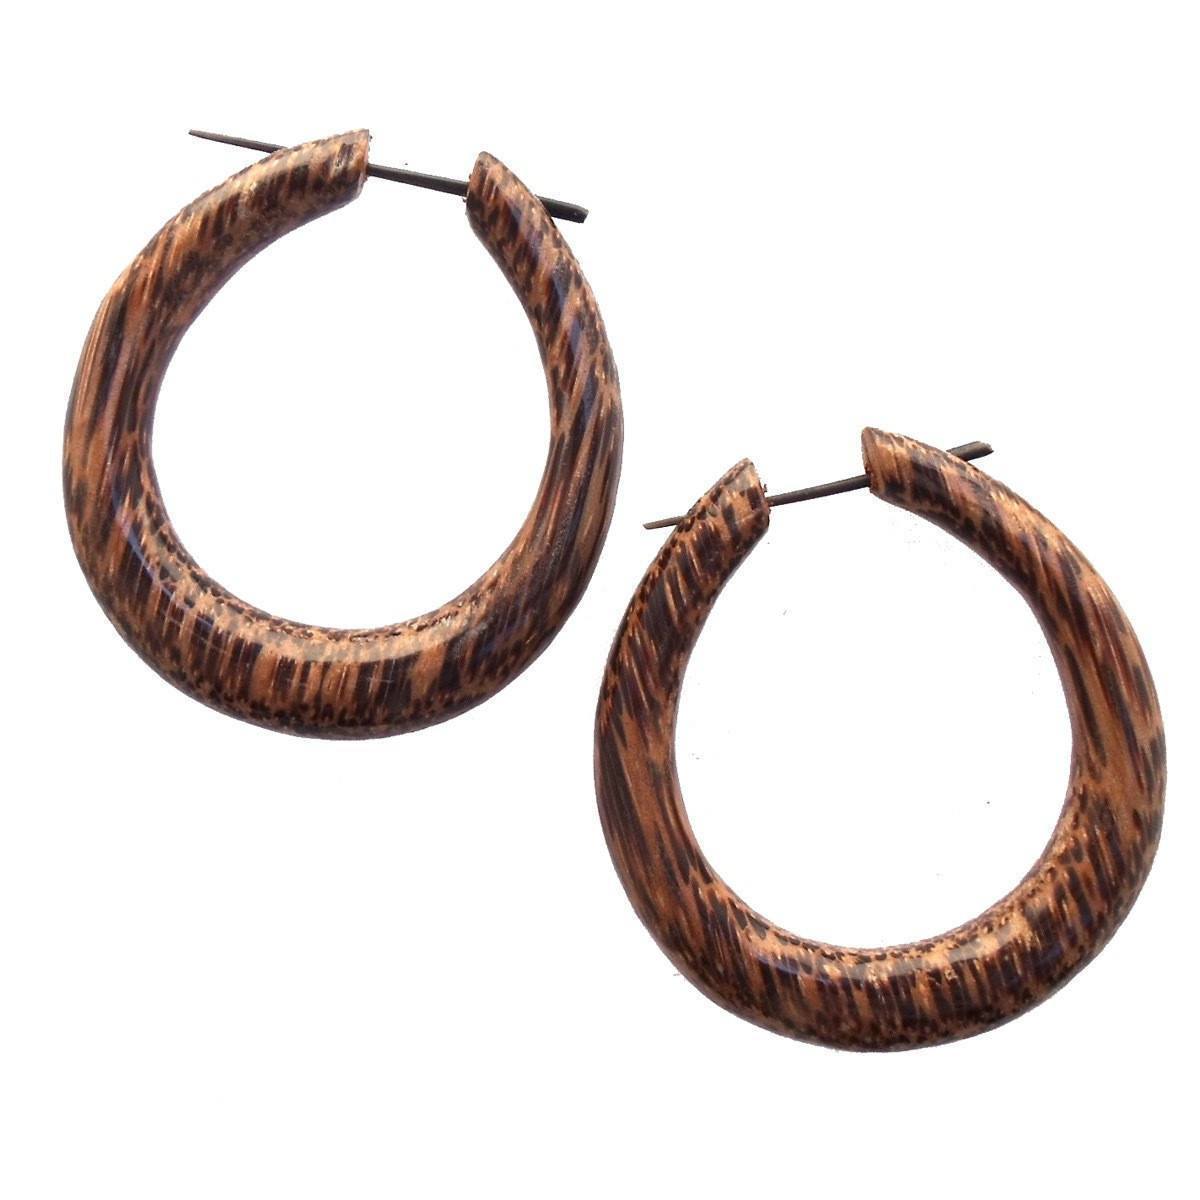 Mana Hoop. Big Hoop Earrings. Coconut Wood Jewelry.